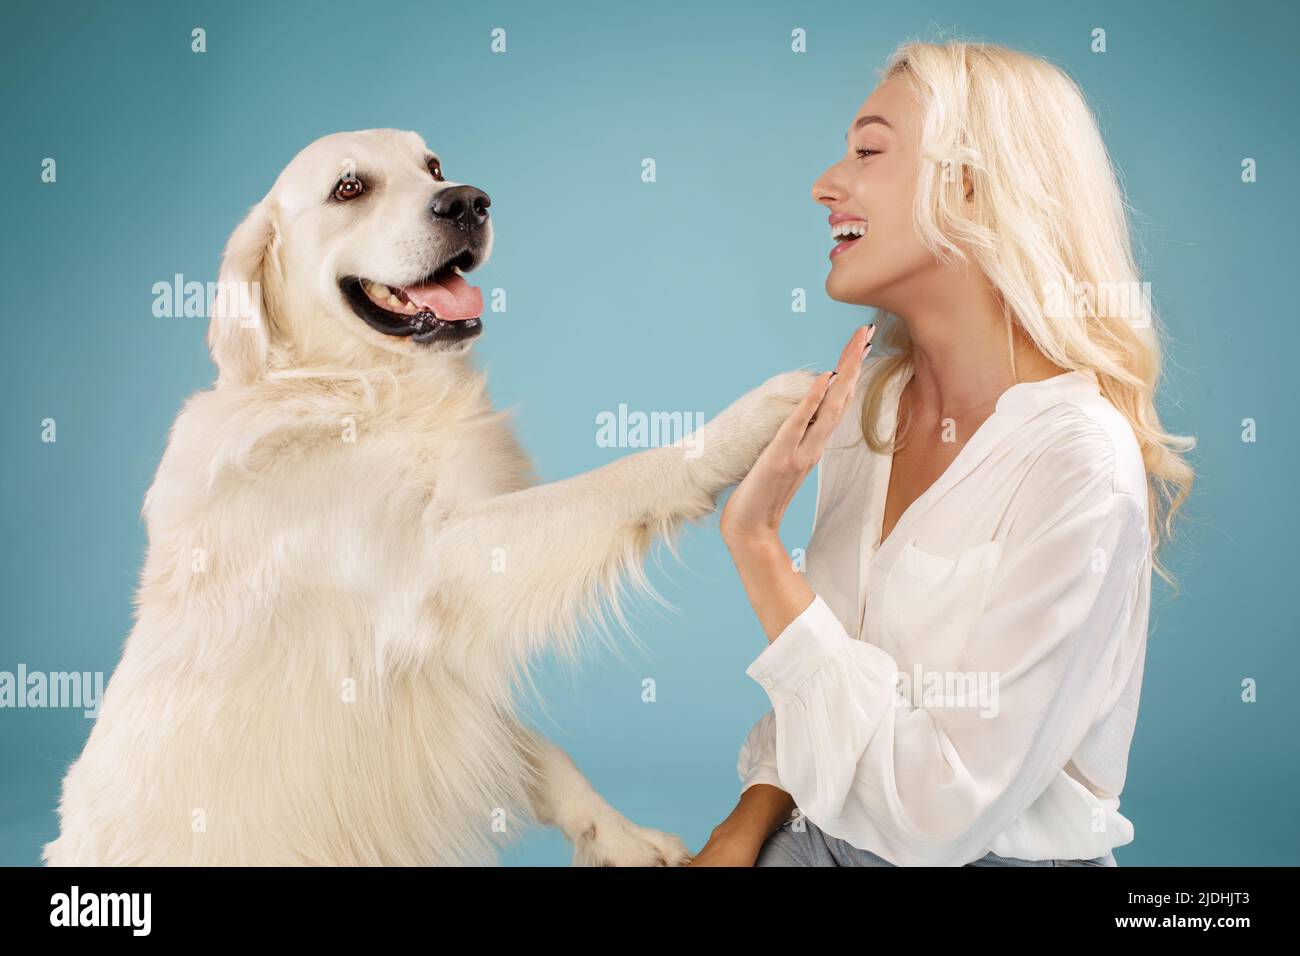 Kontaktkonzept. Frau, die ihrem Hund neue Befehle beibrachte, labrador gab seiner Besitzerin Pfote, blauer Hintergrund Stockfoto